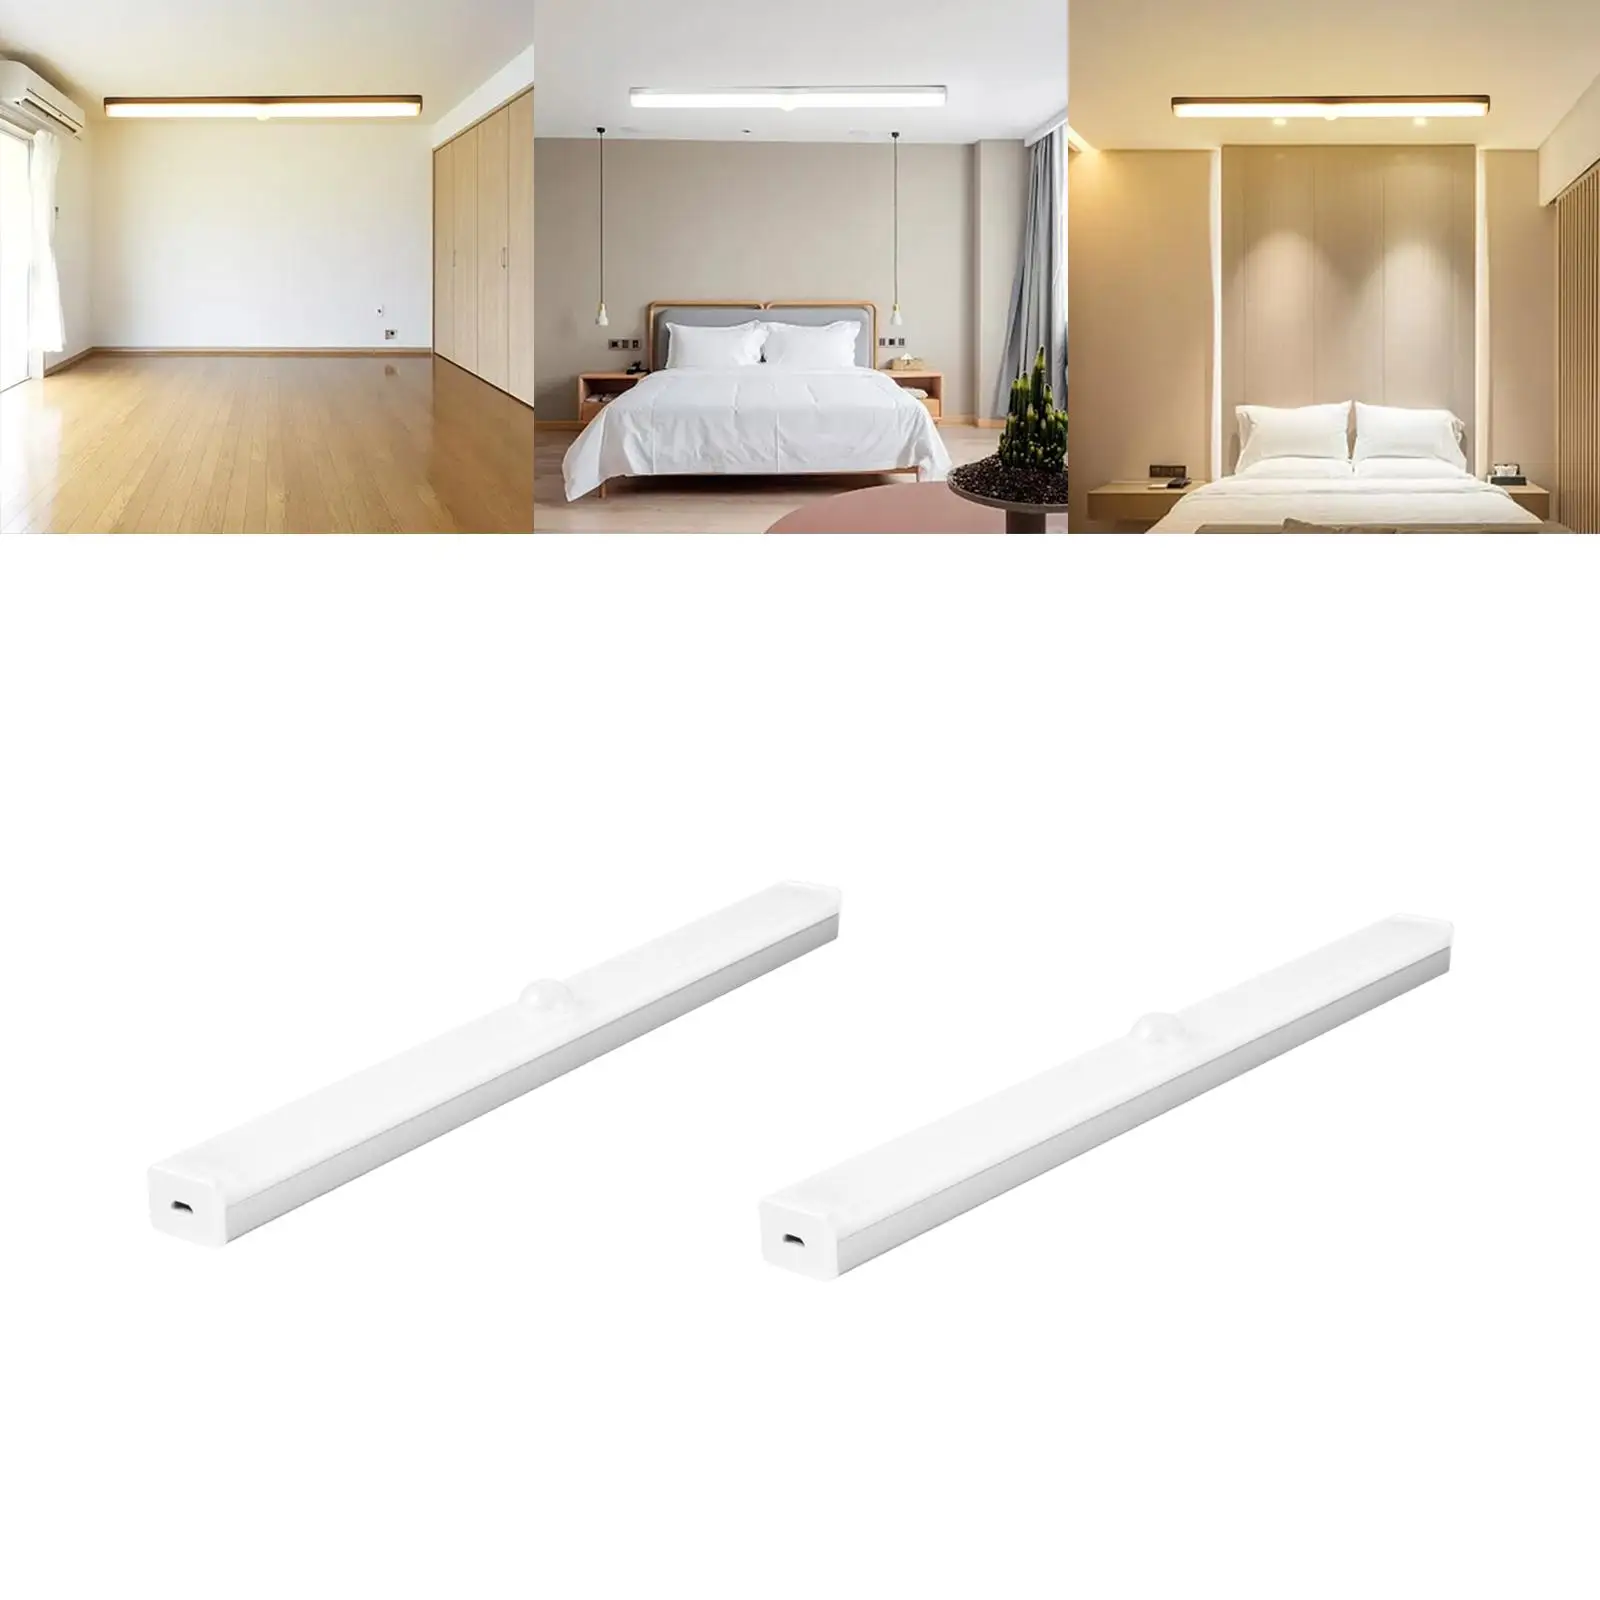 Body Sensor Lights Closet Bedroom Dimming LED Home Under Cabinet Lighting Lights Strip Bar for Display Case Desk Wardrobe Room